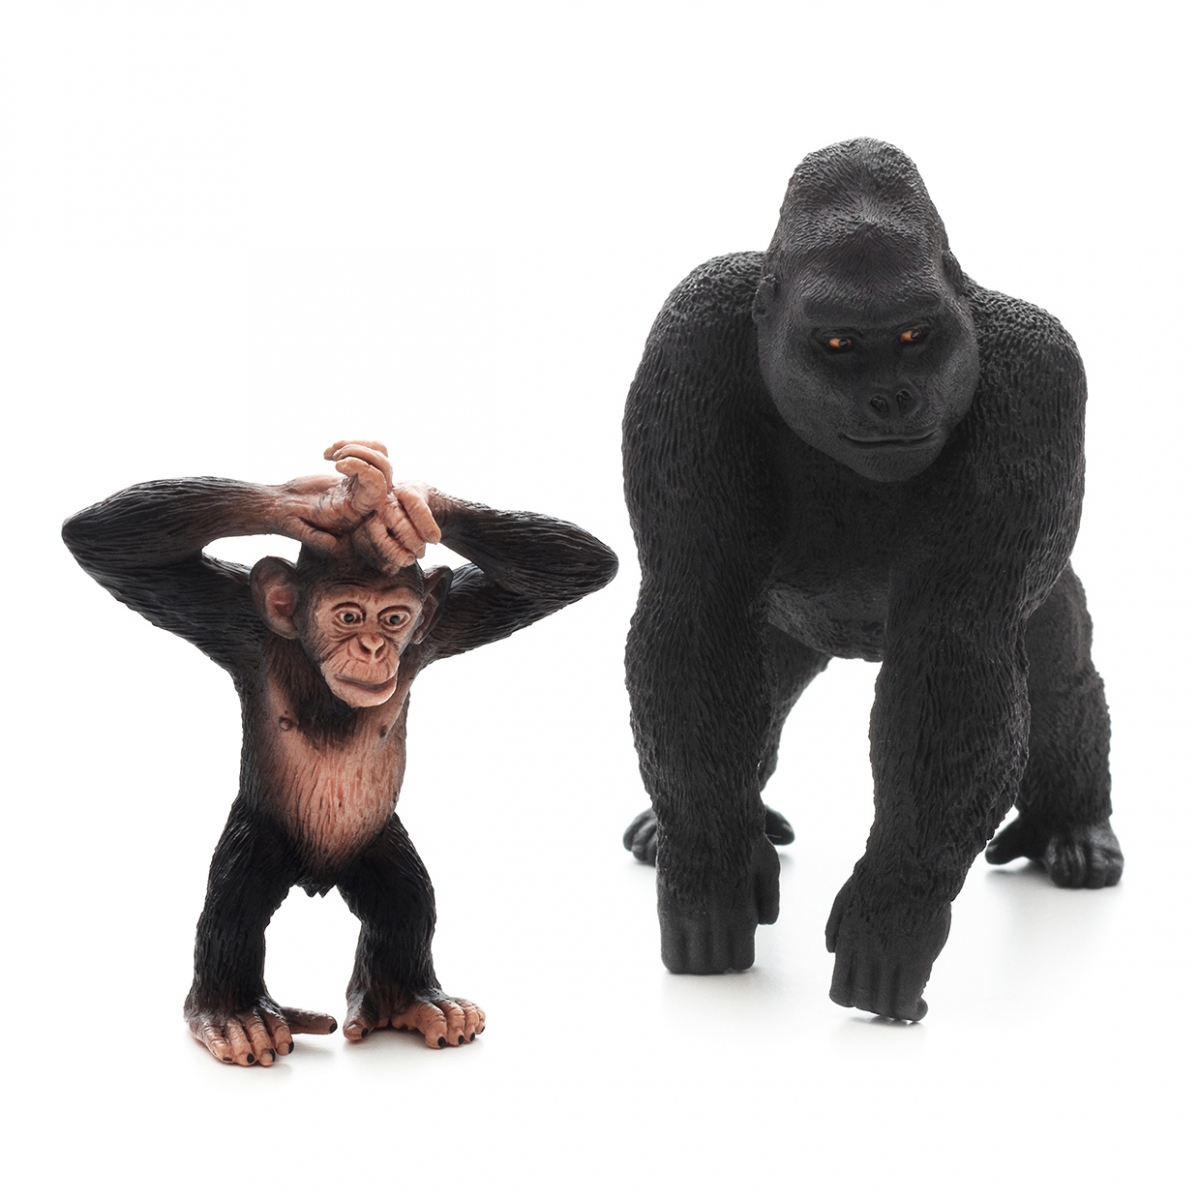 Imagen en la que se ven dos primates: un chimpancé y un gorila